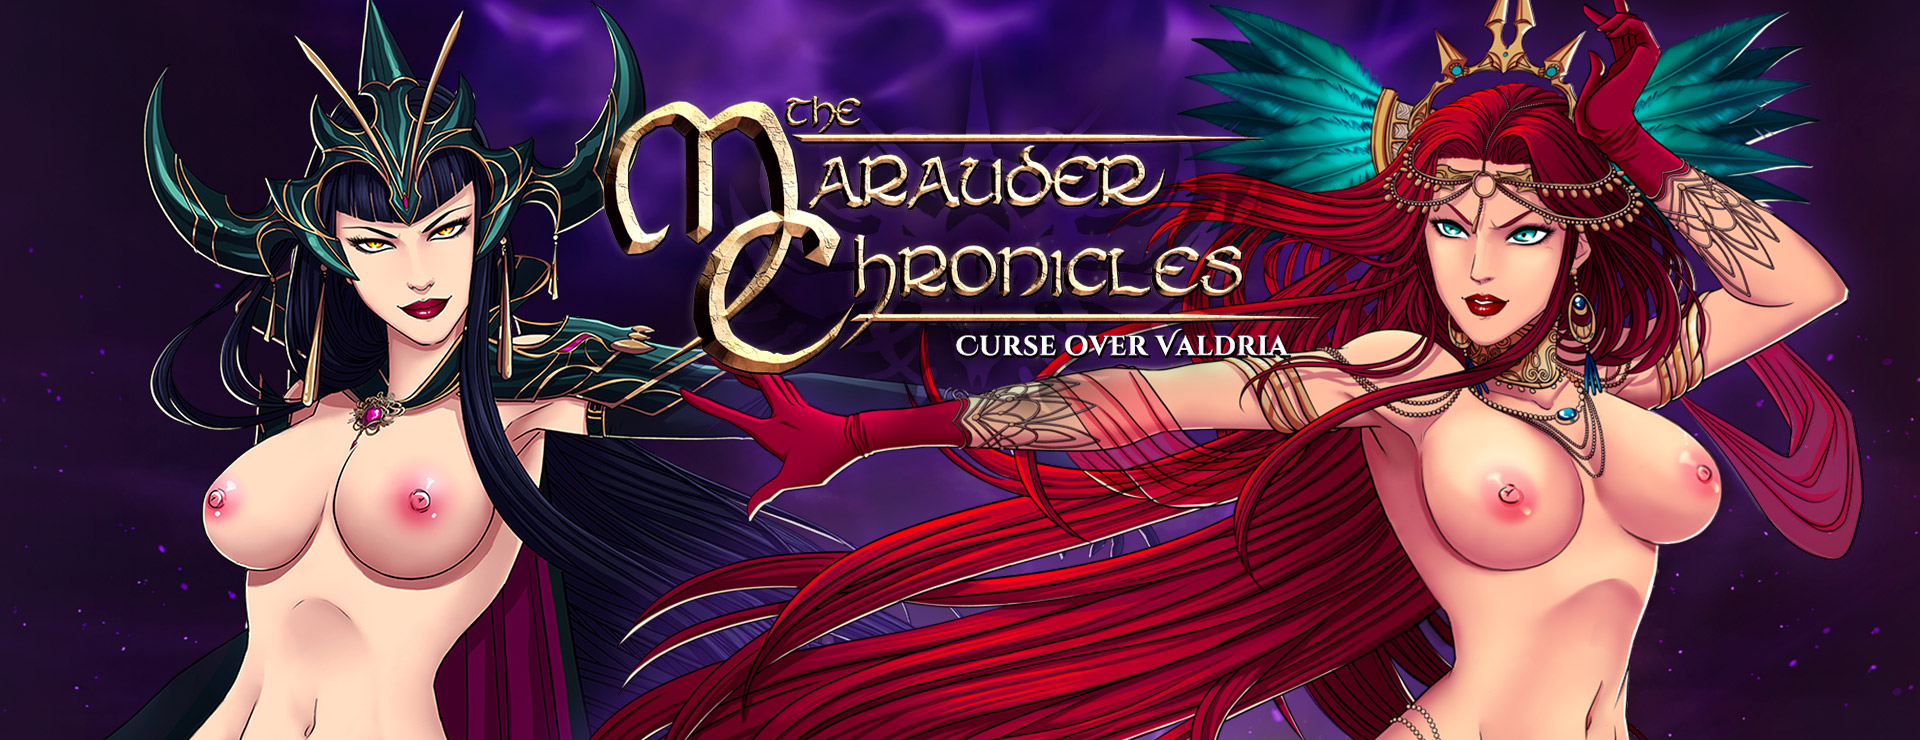 The Marauder Chronicles - Curse over Valdria - Aventura Acción Juego